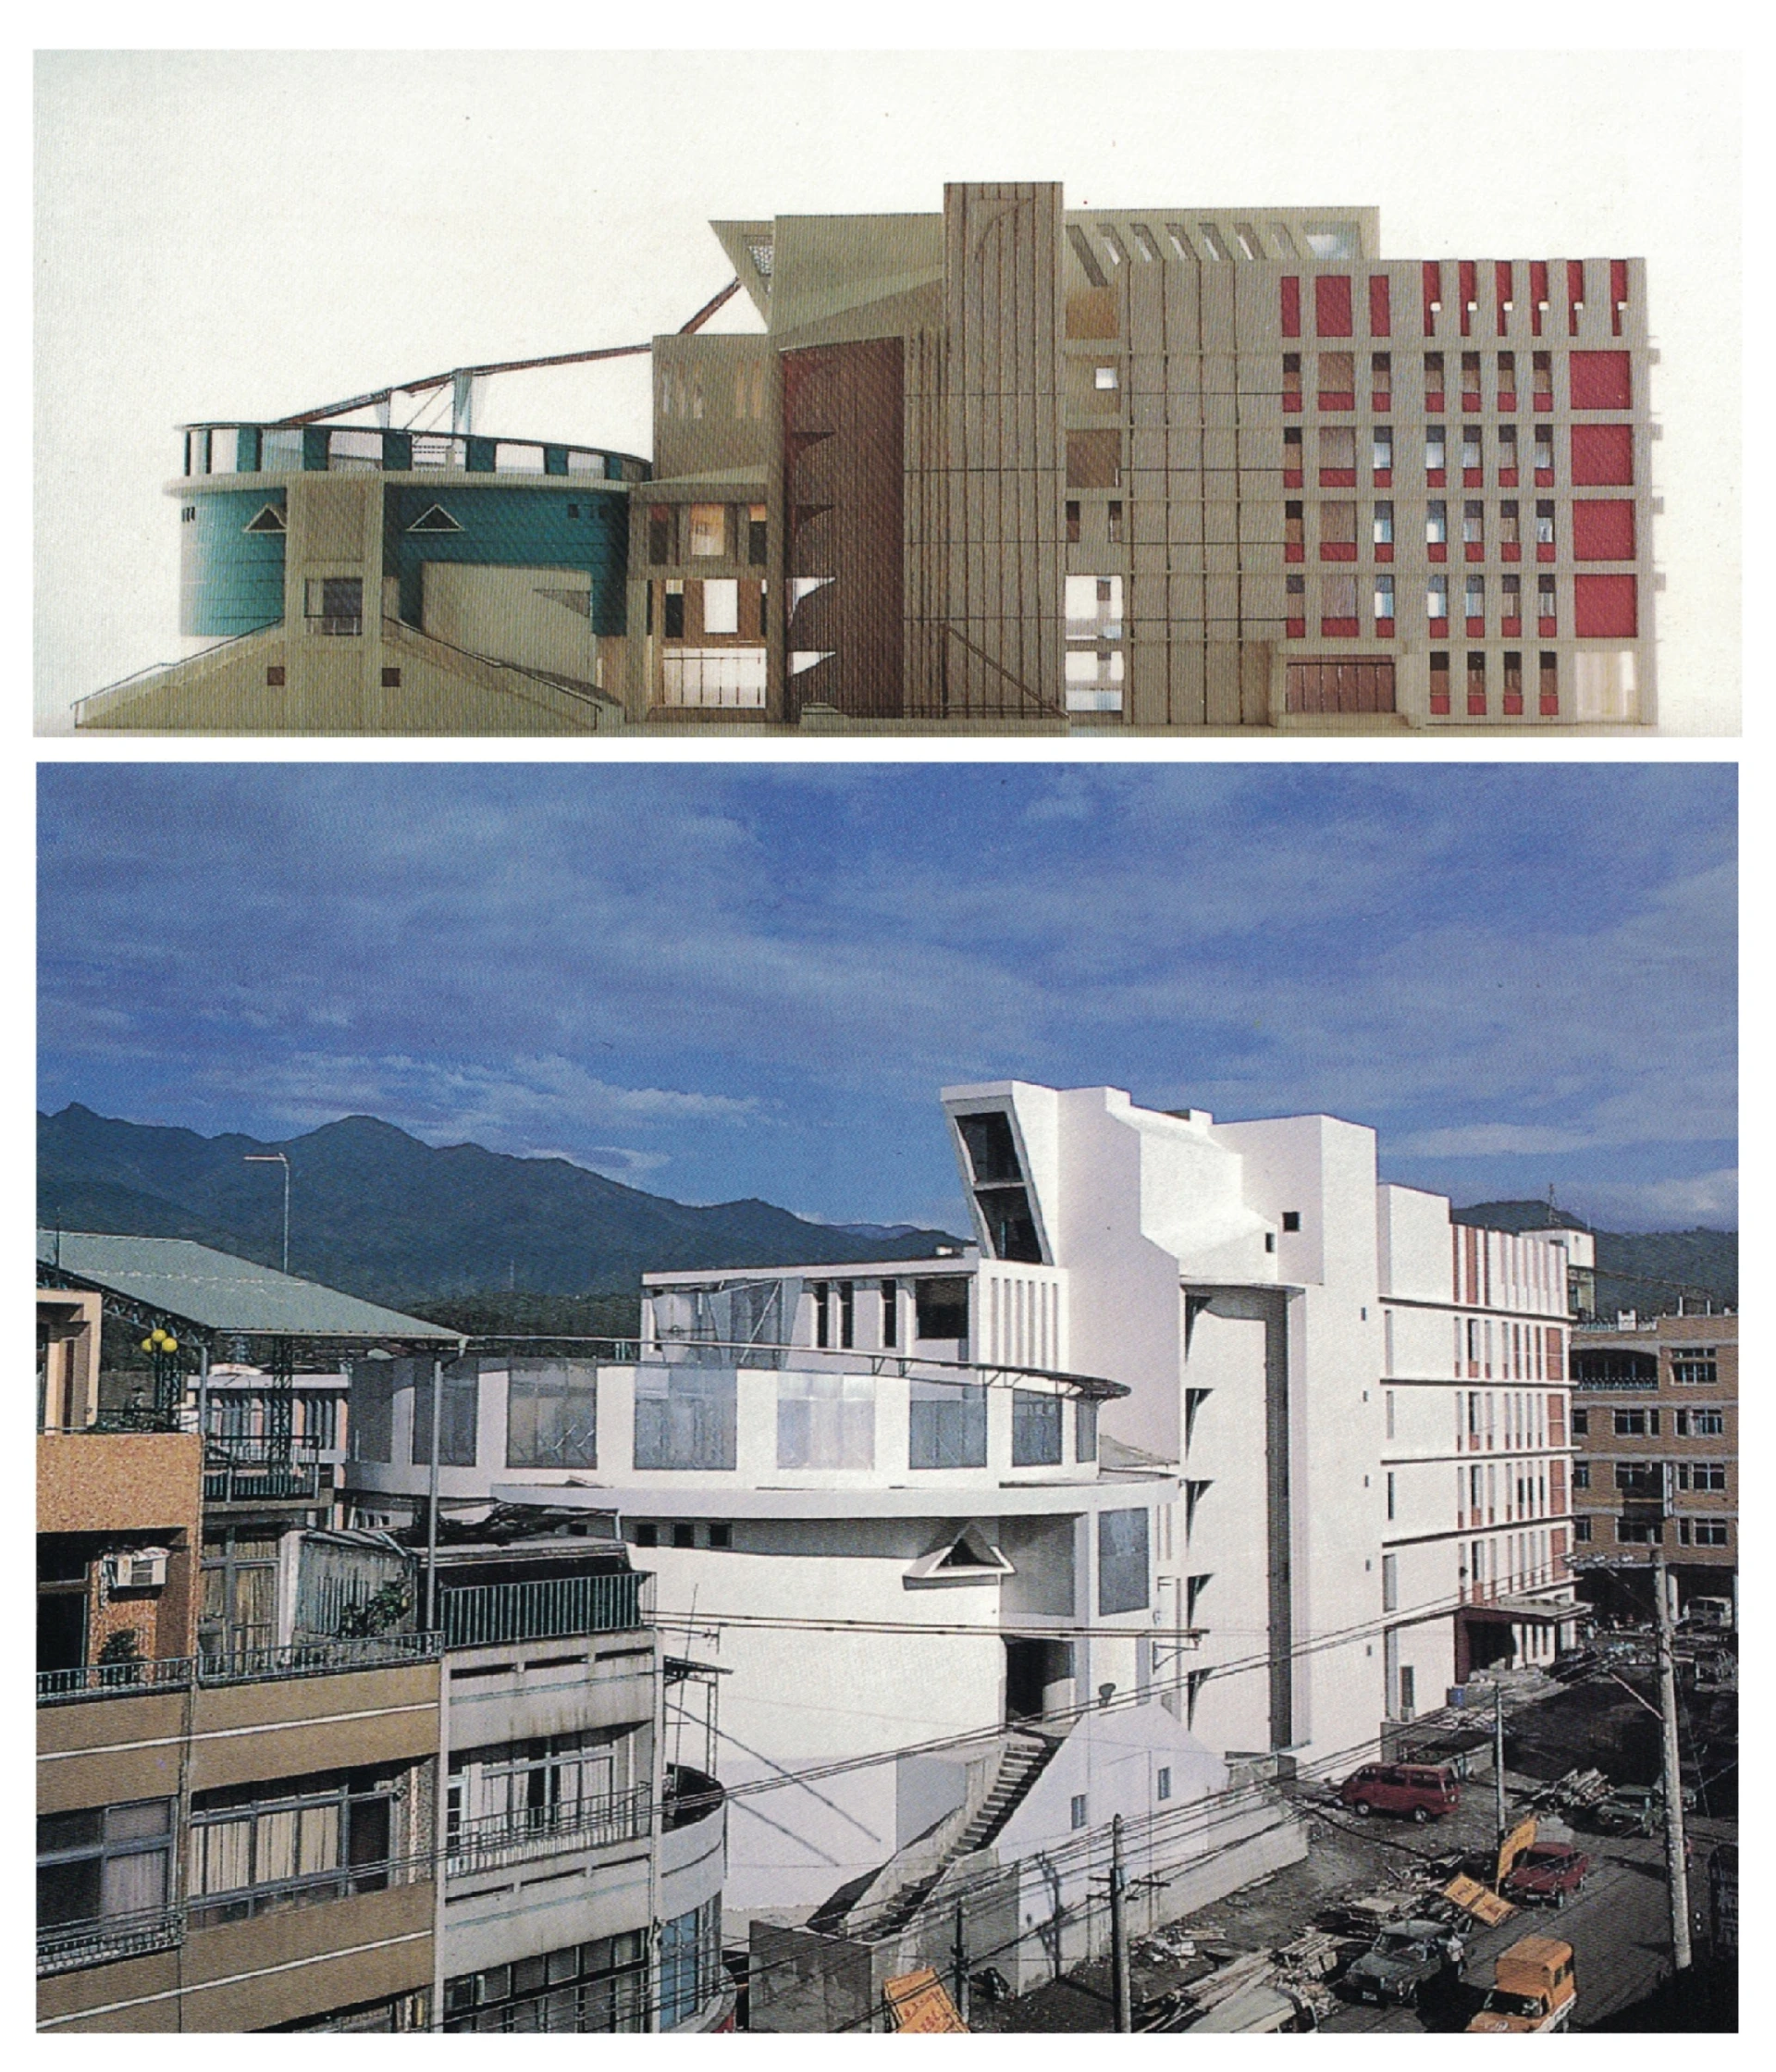 東勢鎮公所，設計建築師：吳增榮，完工於1990年 ©吳增榮提供；模型圖片出自《雅砌》第9期，1990.10，頁67-圖片